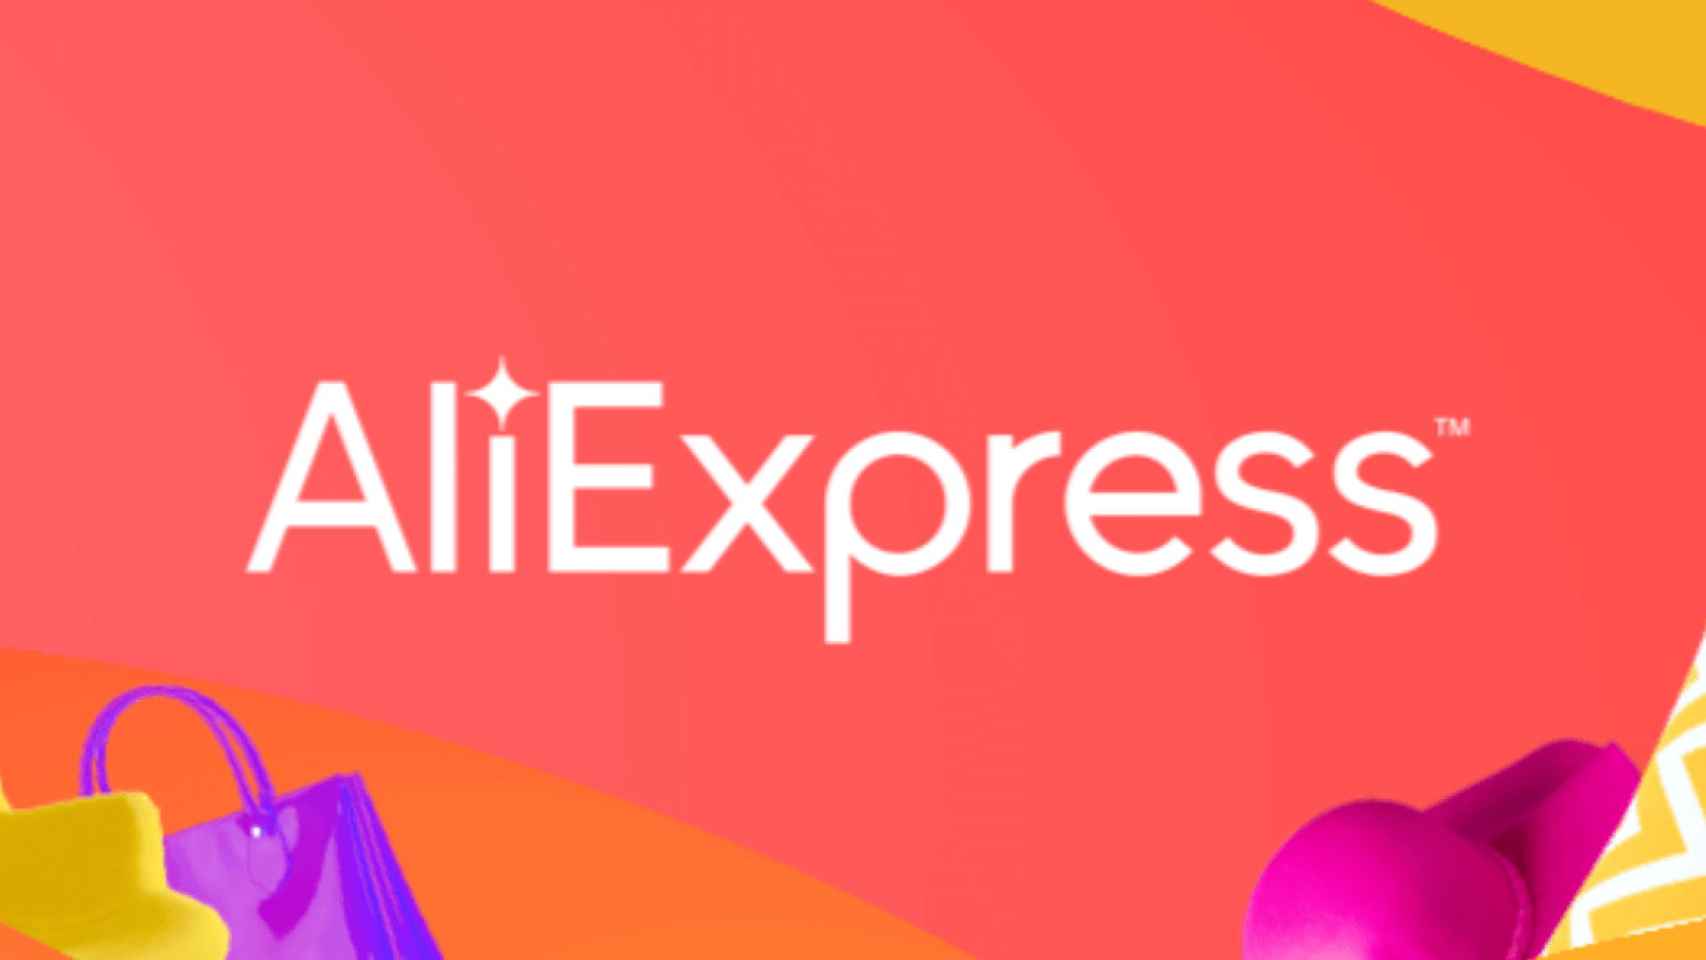 حرکت انتقادی از توکن میم محبوب!  غول تجارت الکترونیک با AliExpress موافقت کرد!